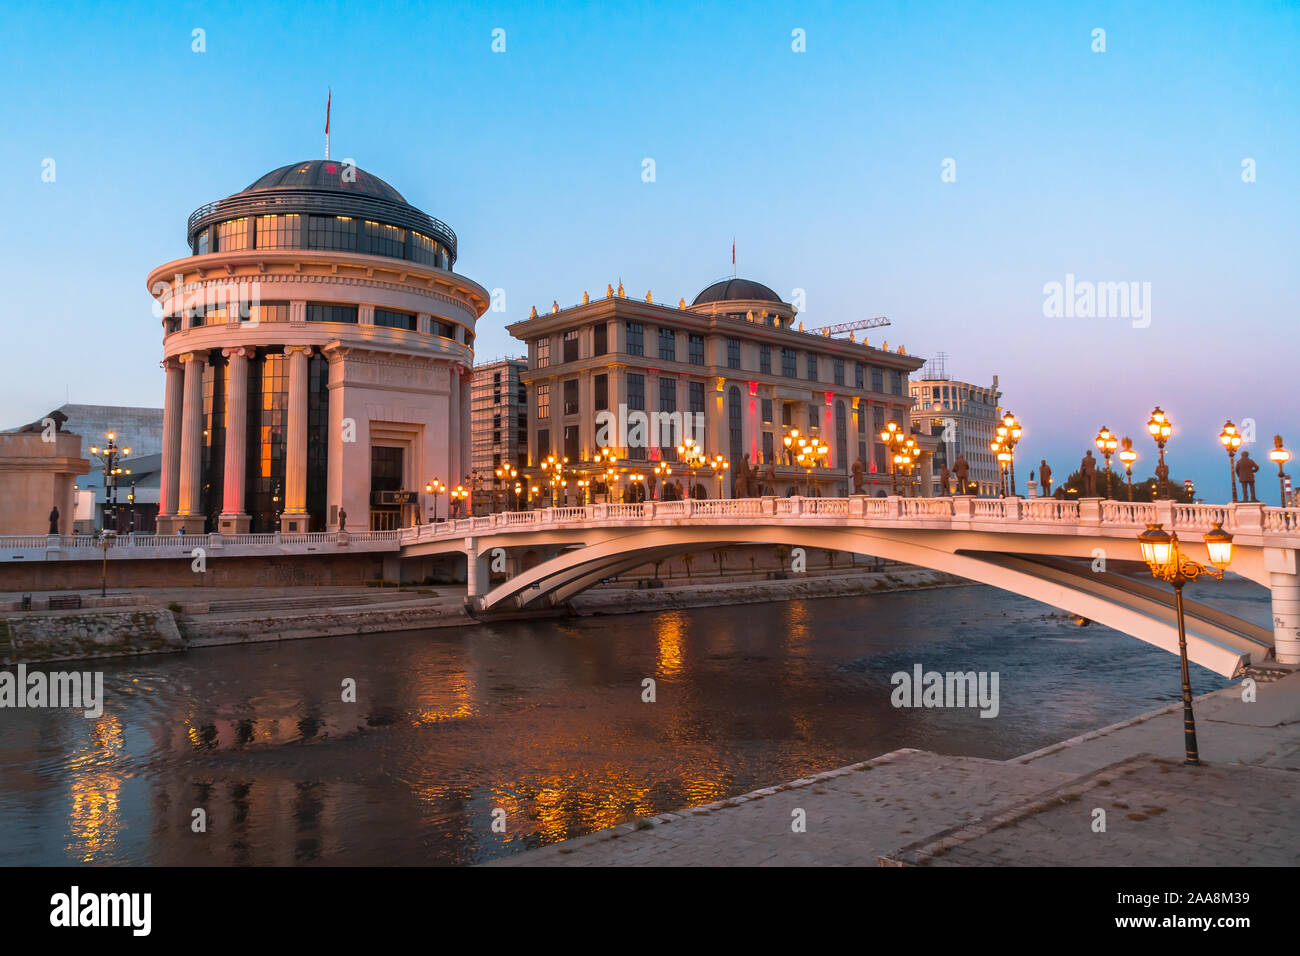 SKOPJE, MACEDONIA NORD - Agosto 7, 2019 : centro città di Skopje con sculture e edifici. A Skopje è la città capitale della Macedonia. Foto Stock